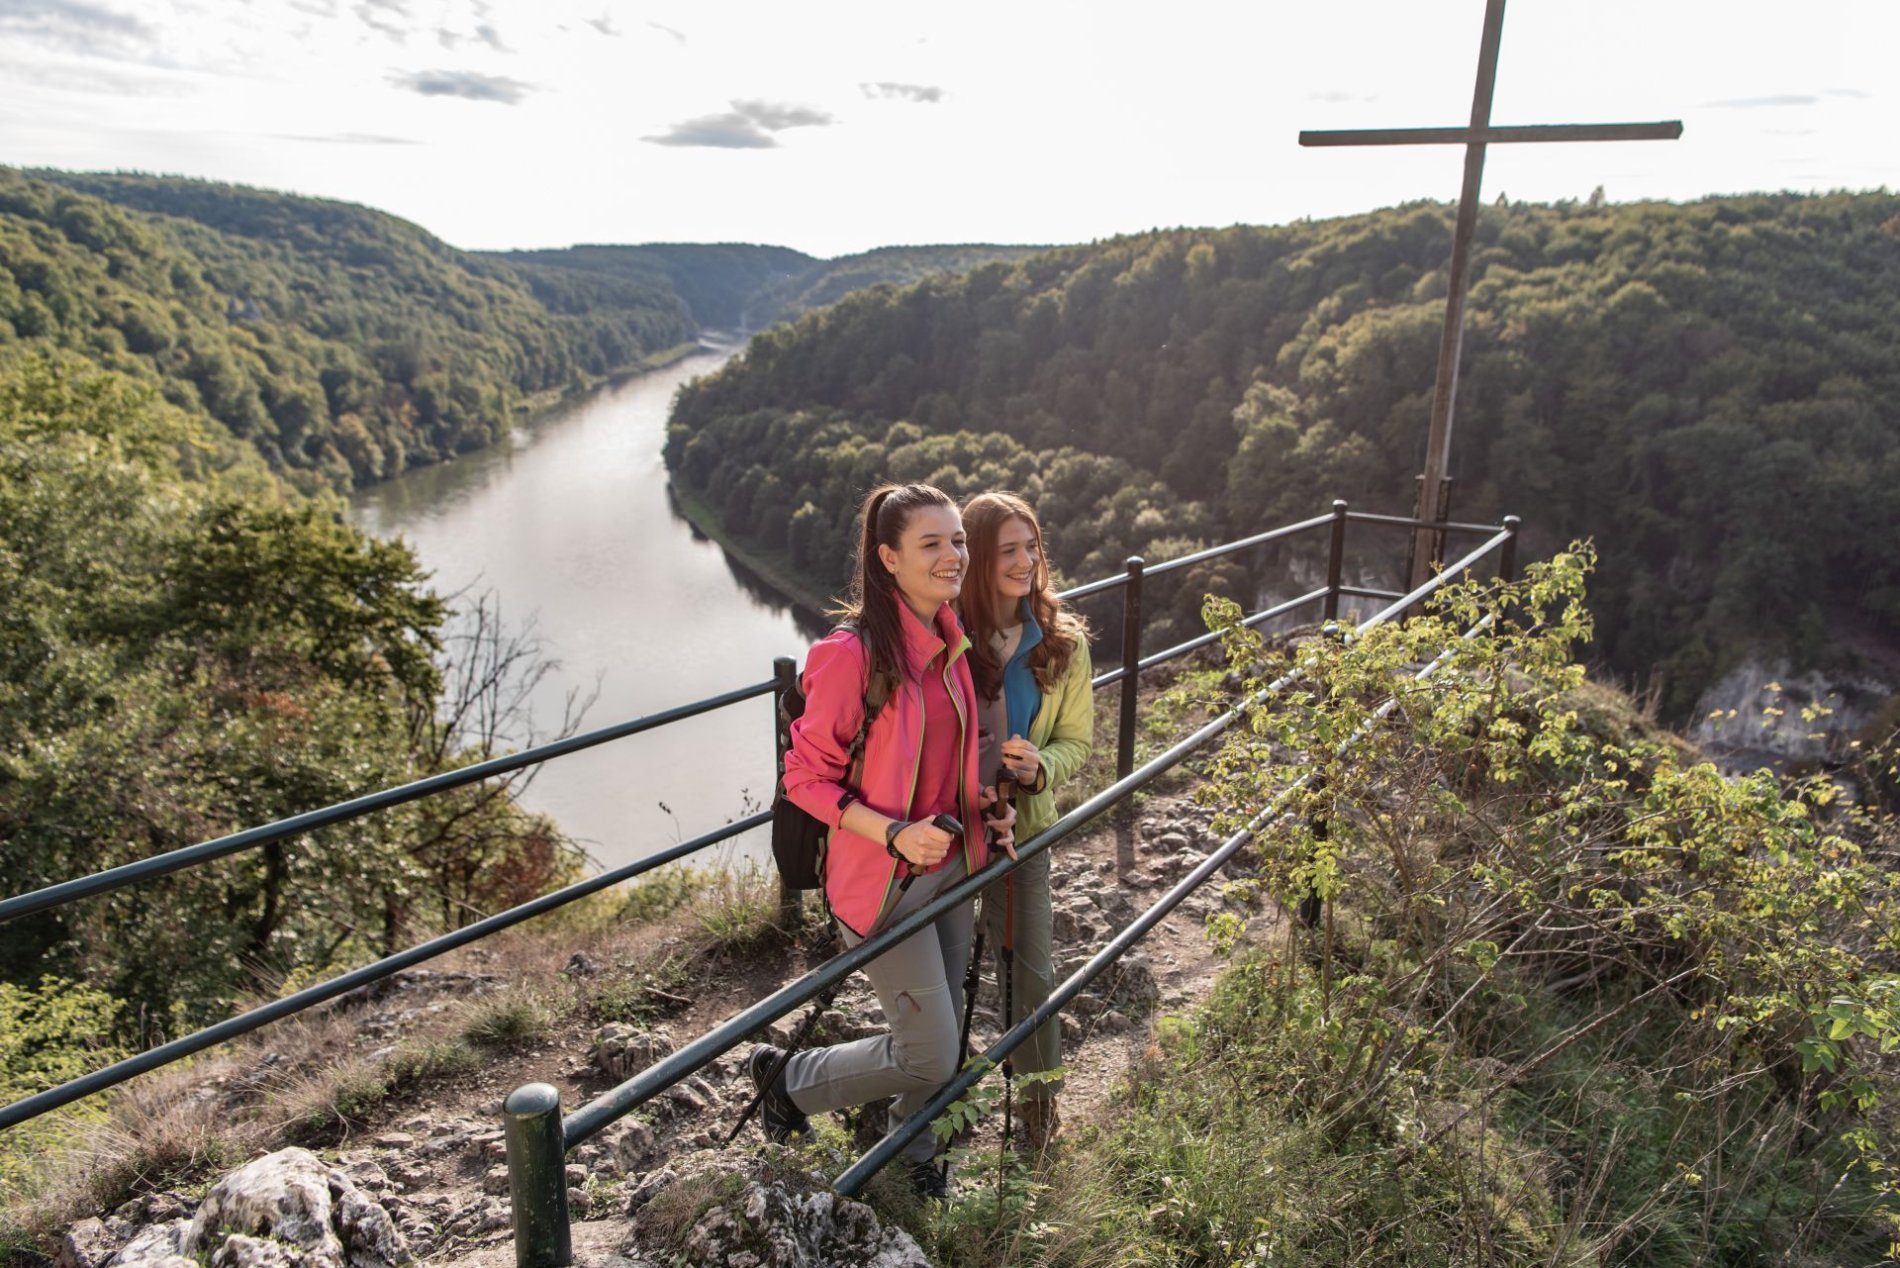 Das Wieserkreuz ist ein Aussichtspunkt im Naturschutzgebiet Weltenburger Enge. Zwei Wanderer genießen hier den Ausblick über die Donau und die umliegenden Wälder.